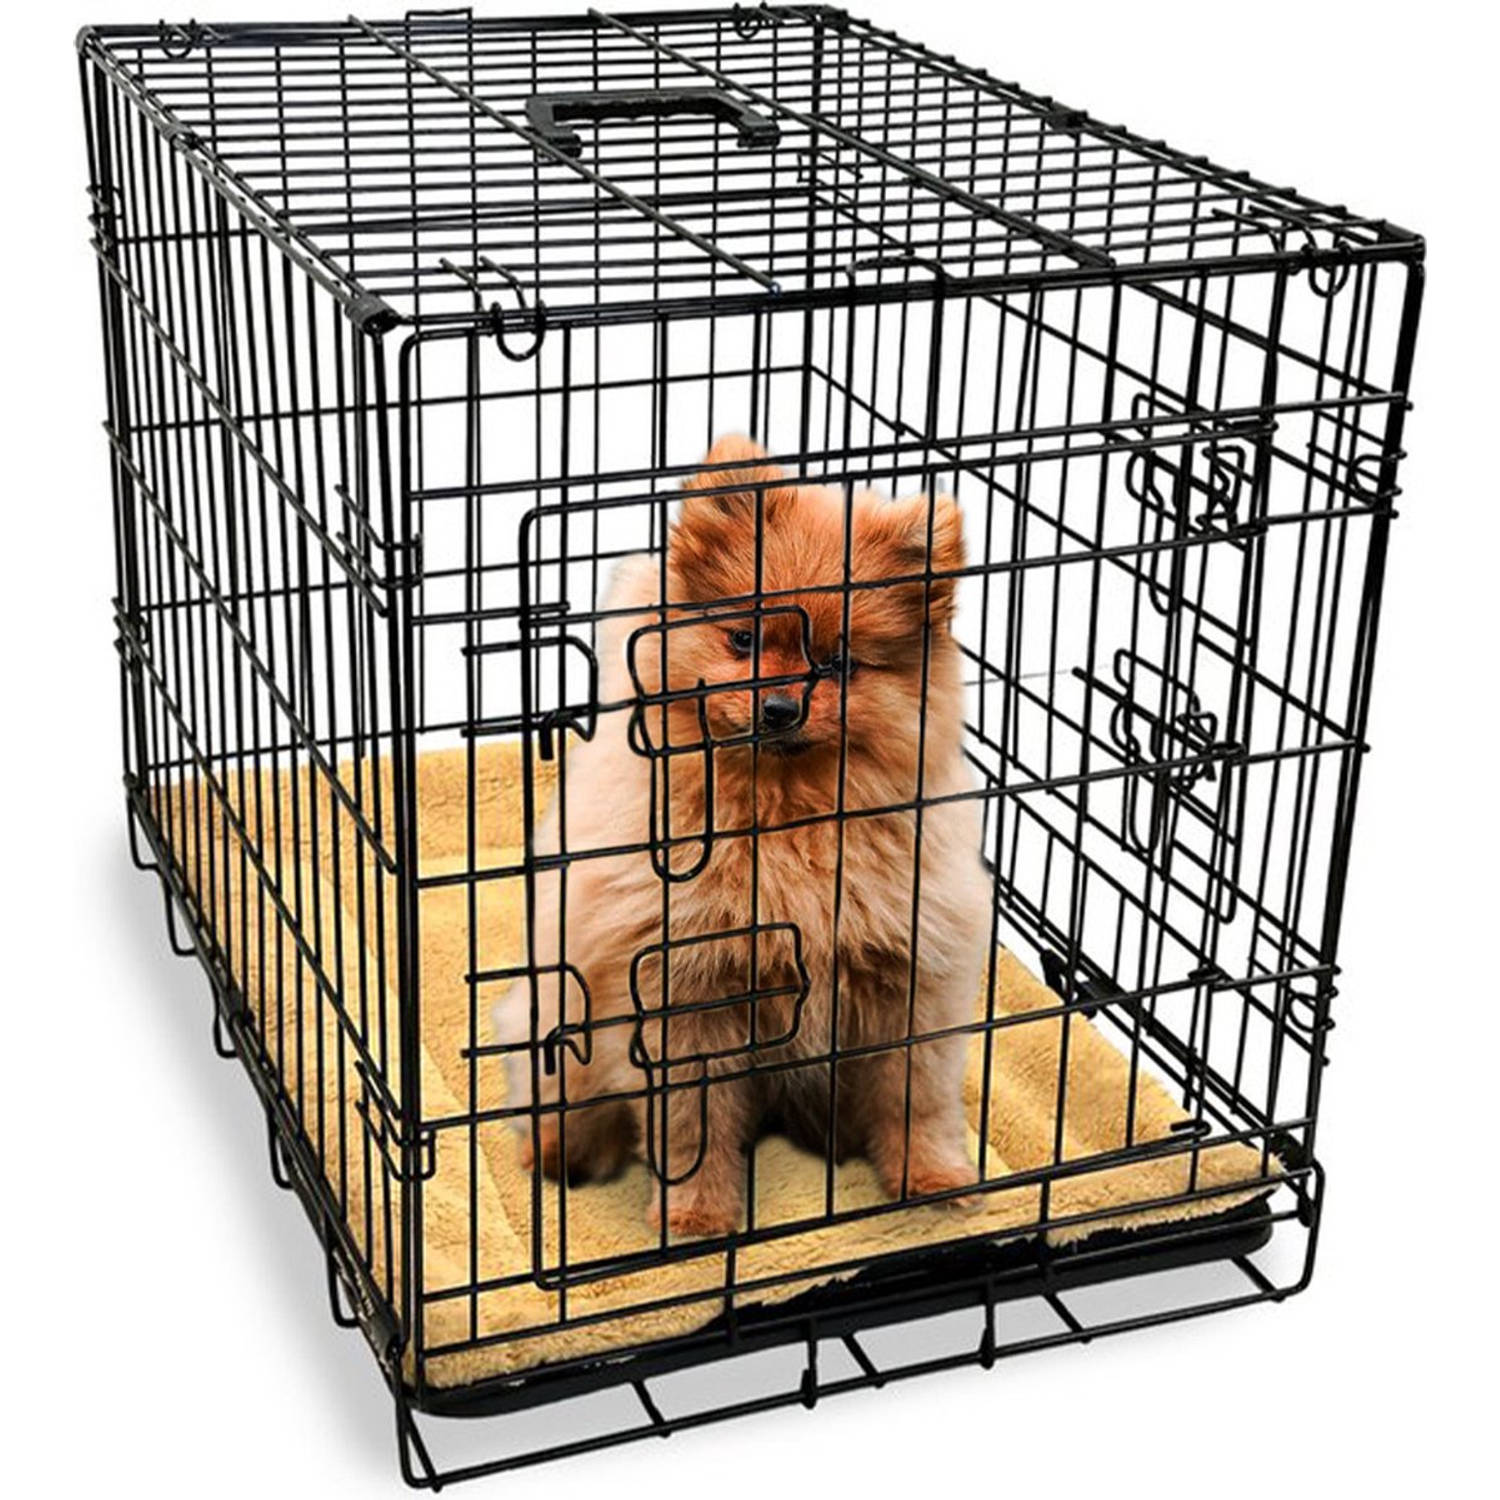 Gopets Hondenbench Opvouwbaar S Bench Voor Honden Incl. Plaid 2 Deuren 61 x 43 x 48 cm